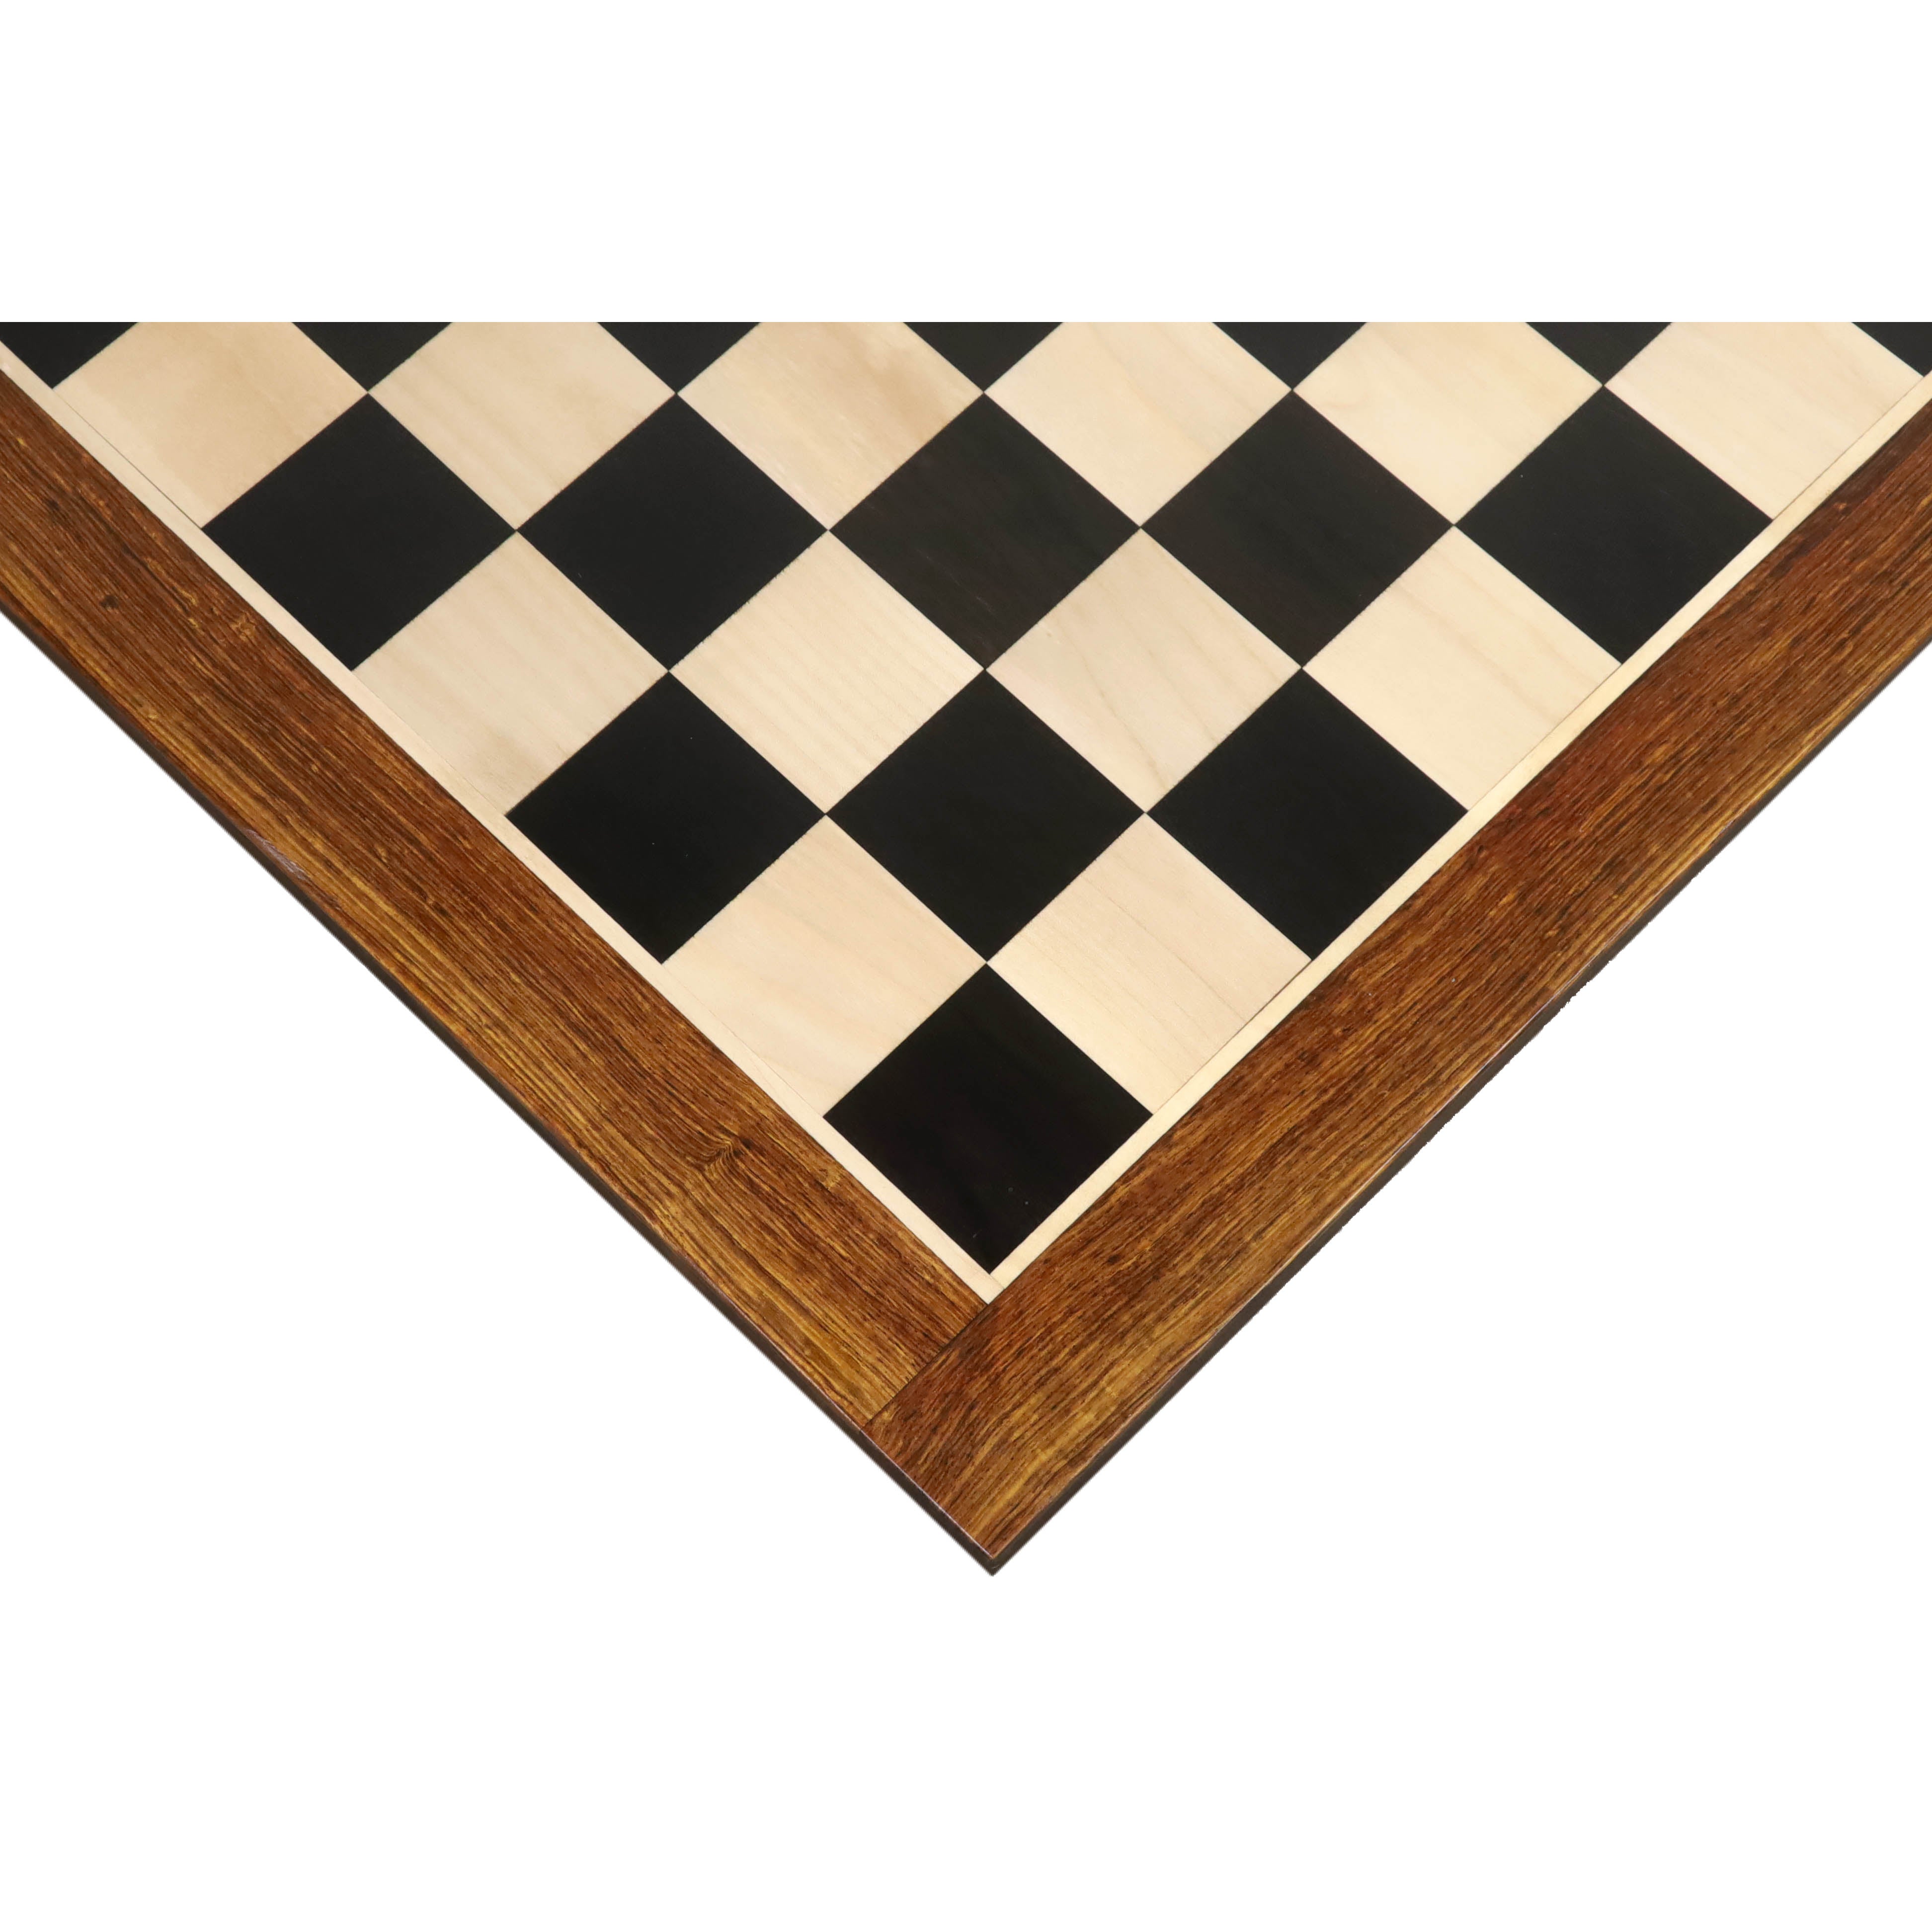 Combo of 4.1" Stallion Staunton Luxury Ebony Wood Chess Pieces with 23" Large Ebony & Maple Wood Chessboard and Storage Box